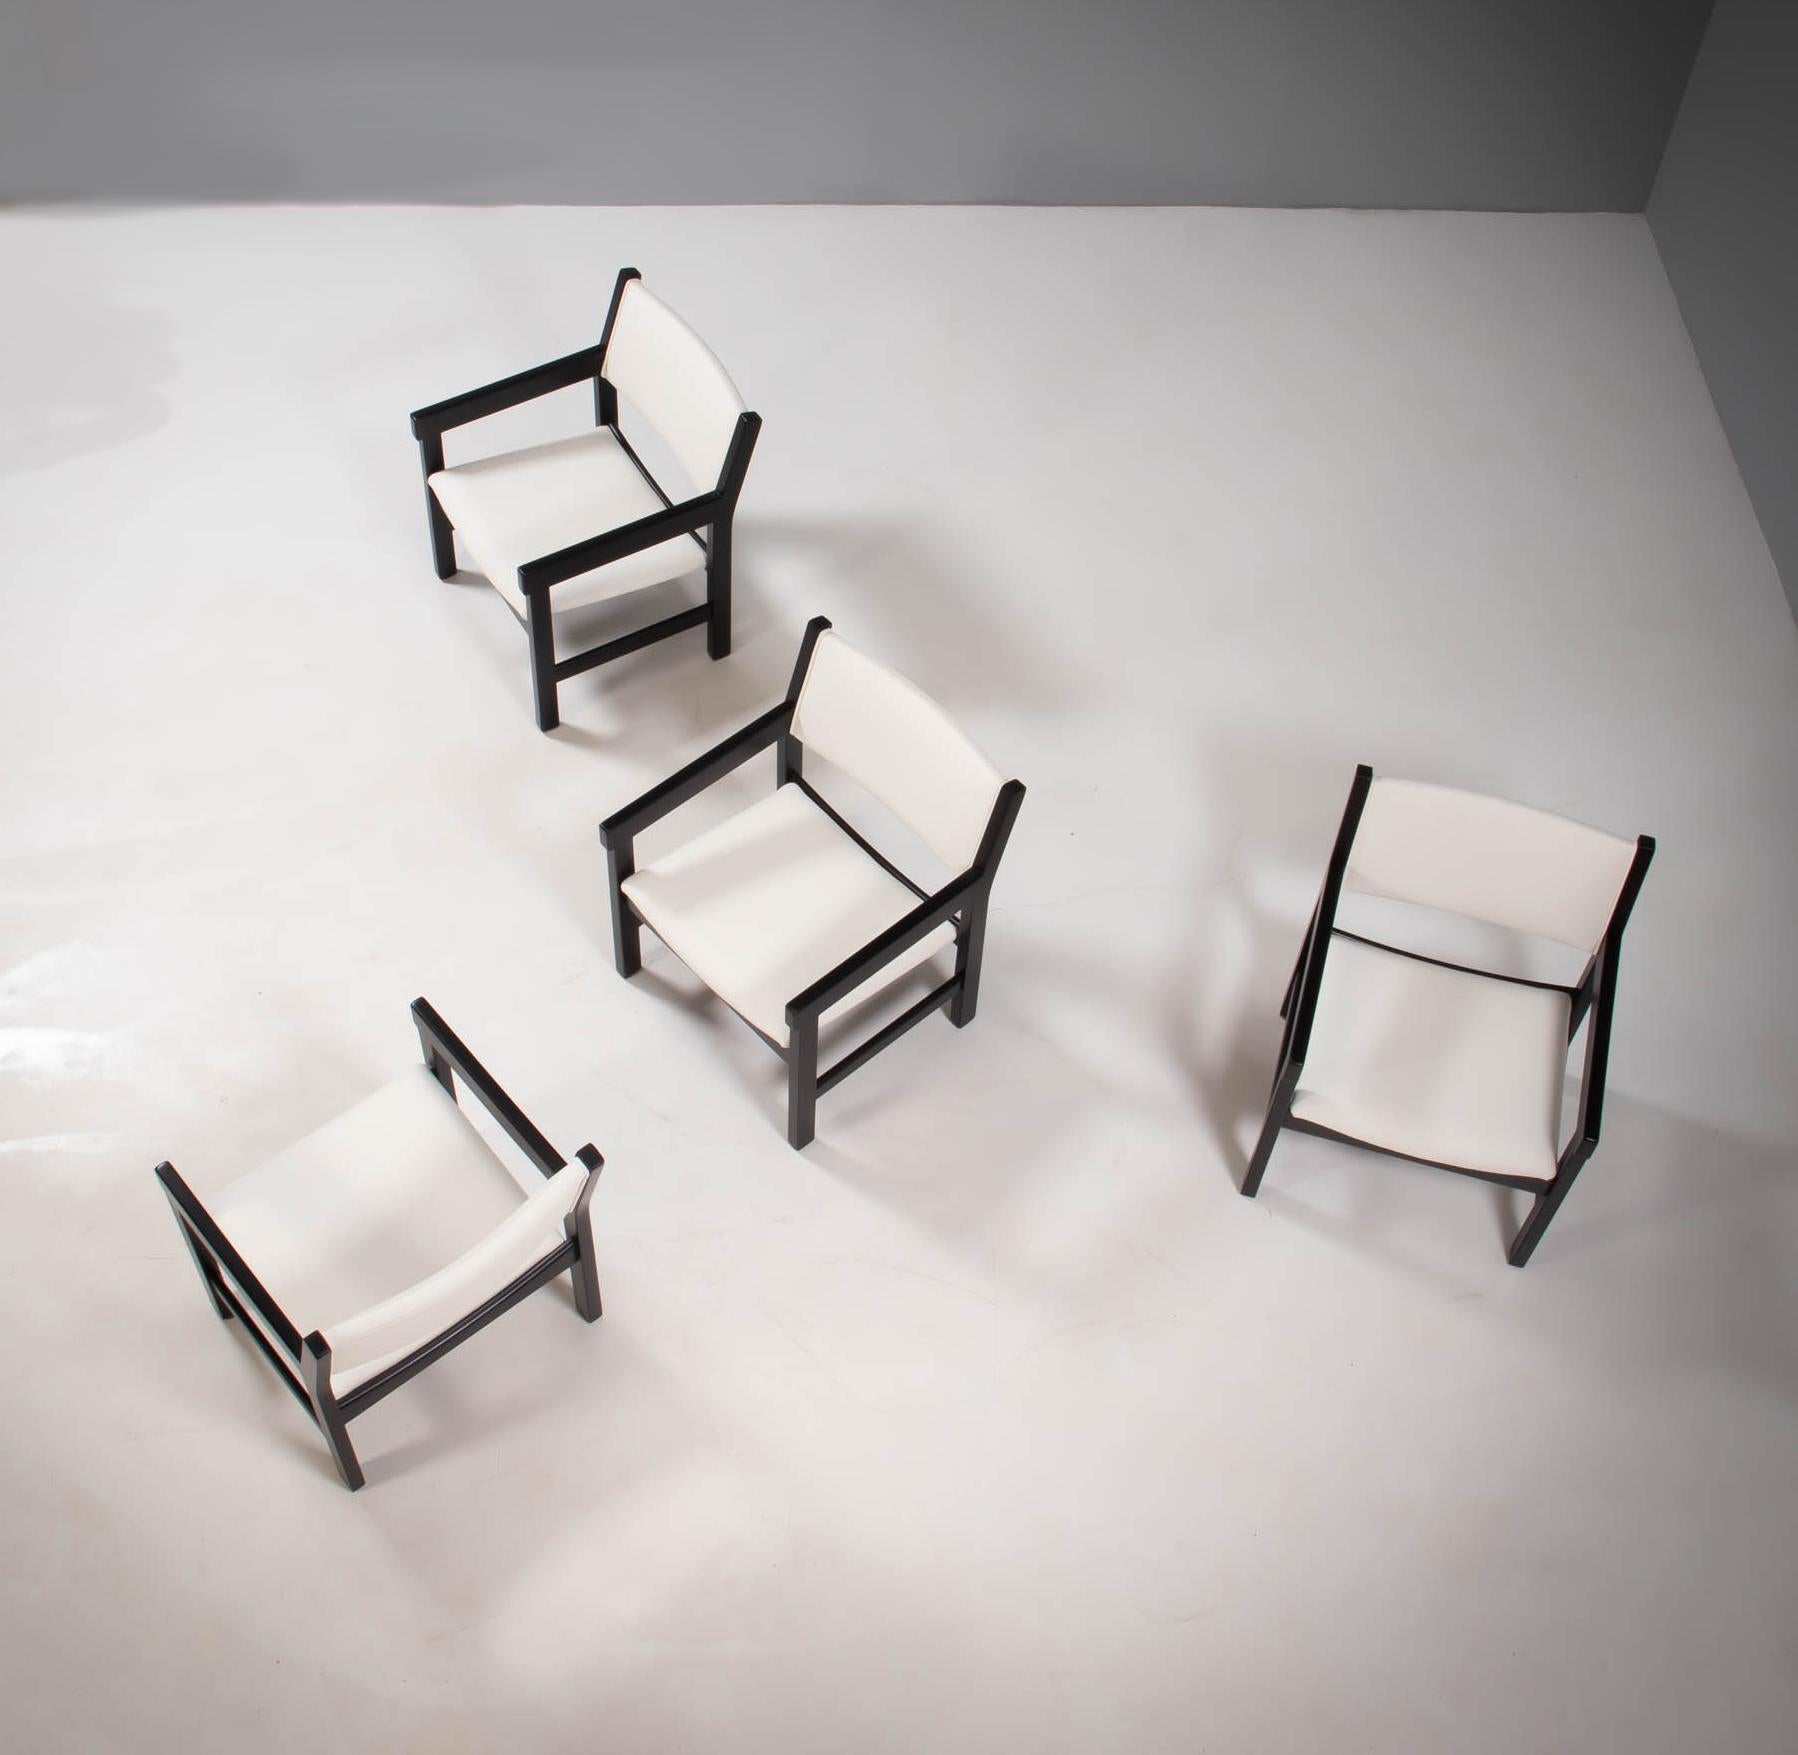 Dieses Set aus vier Sesseln GE 151 wurde von Hans J. Wegner für GETAMA entworfen und ist ein klassisches Beispiel für das Design der Jahrhundertmitte.

Die neu restaurierten Stühle mit ihren kantigen, schwarz lackierten Buchenholzrahmen und -armen